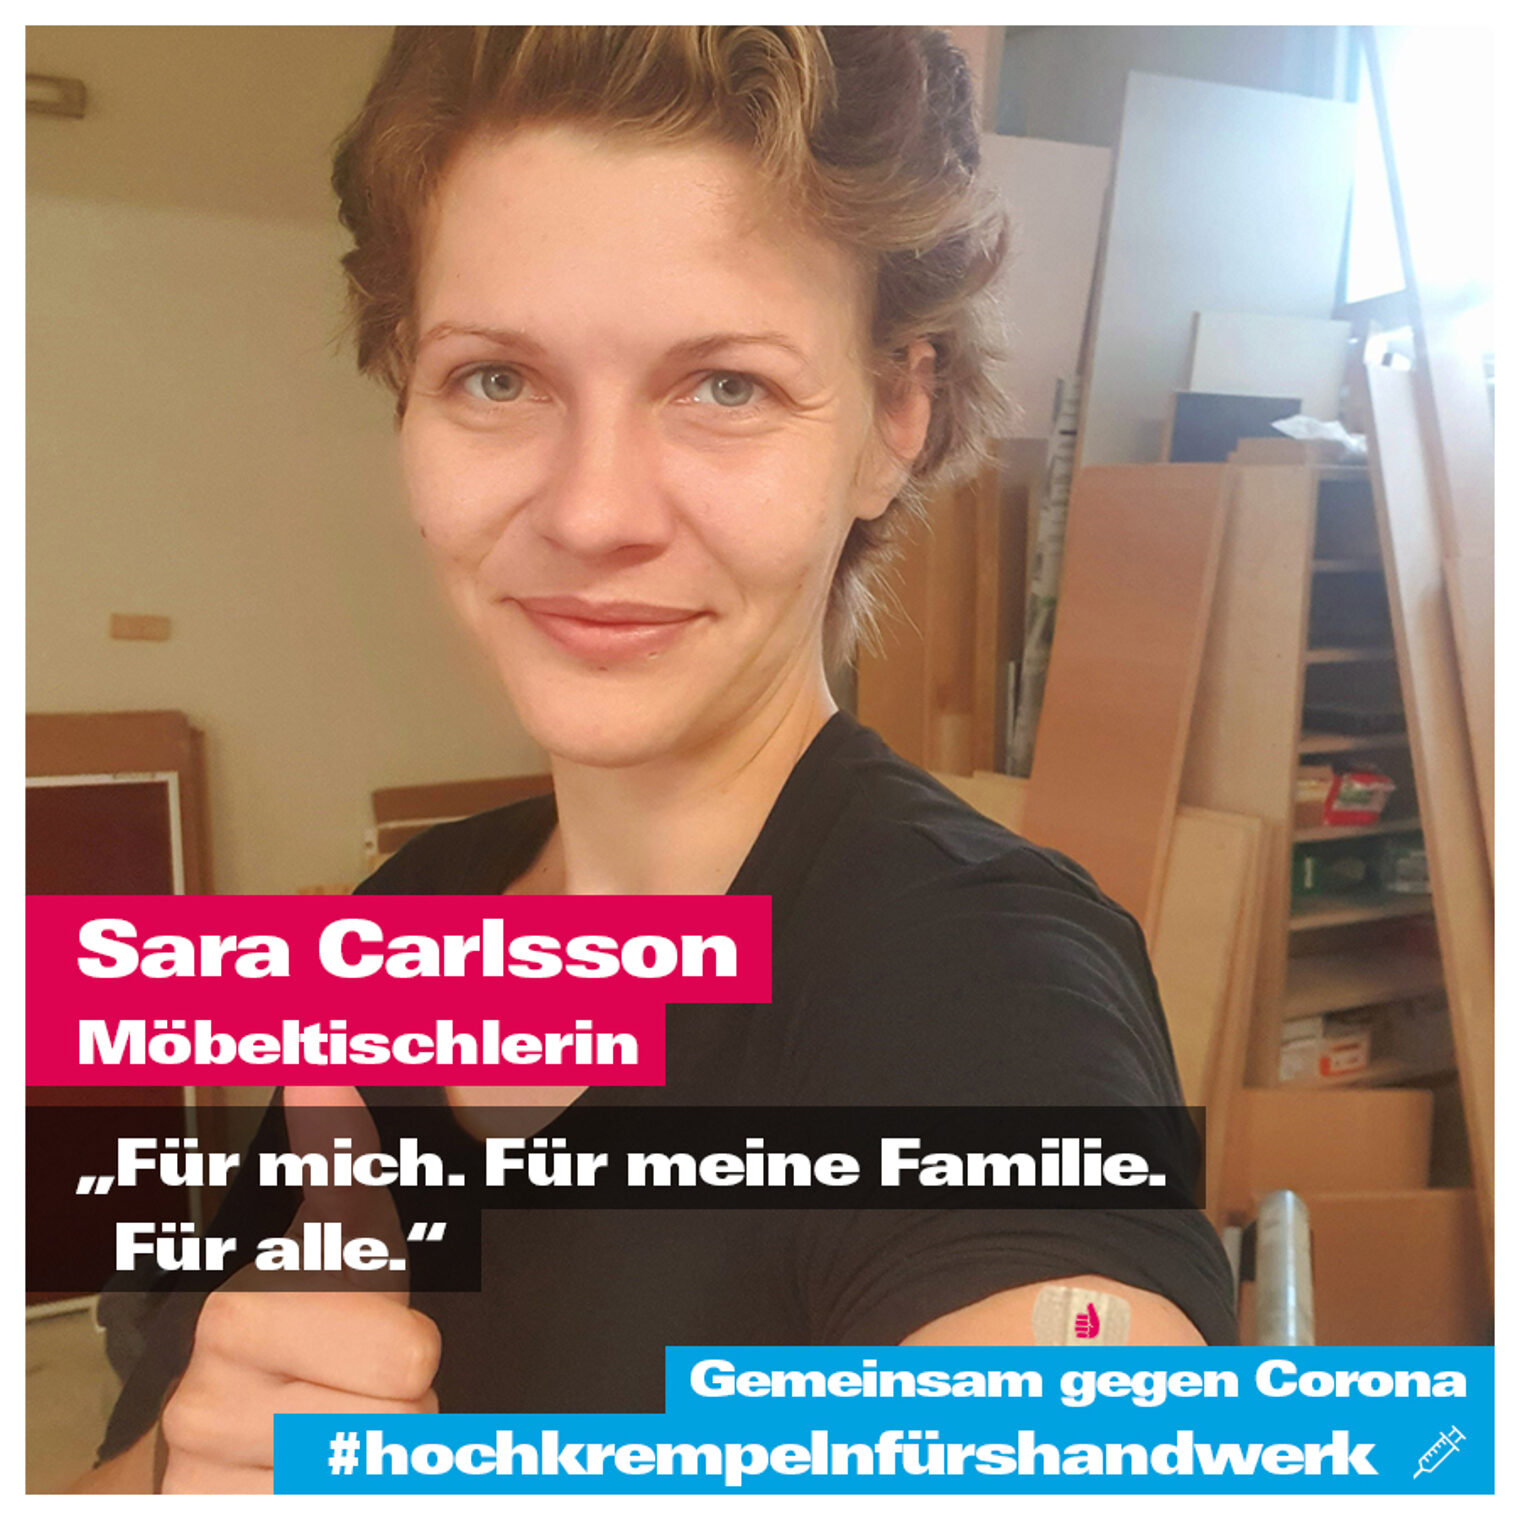 Sara Carlsson